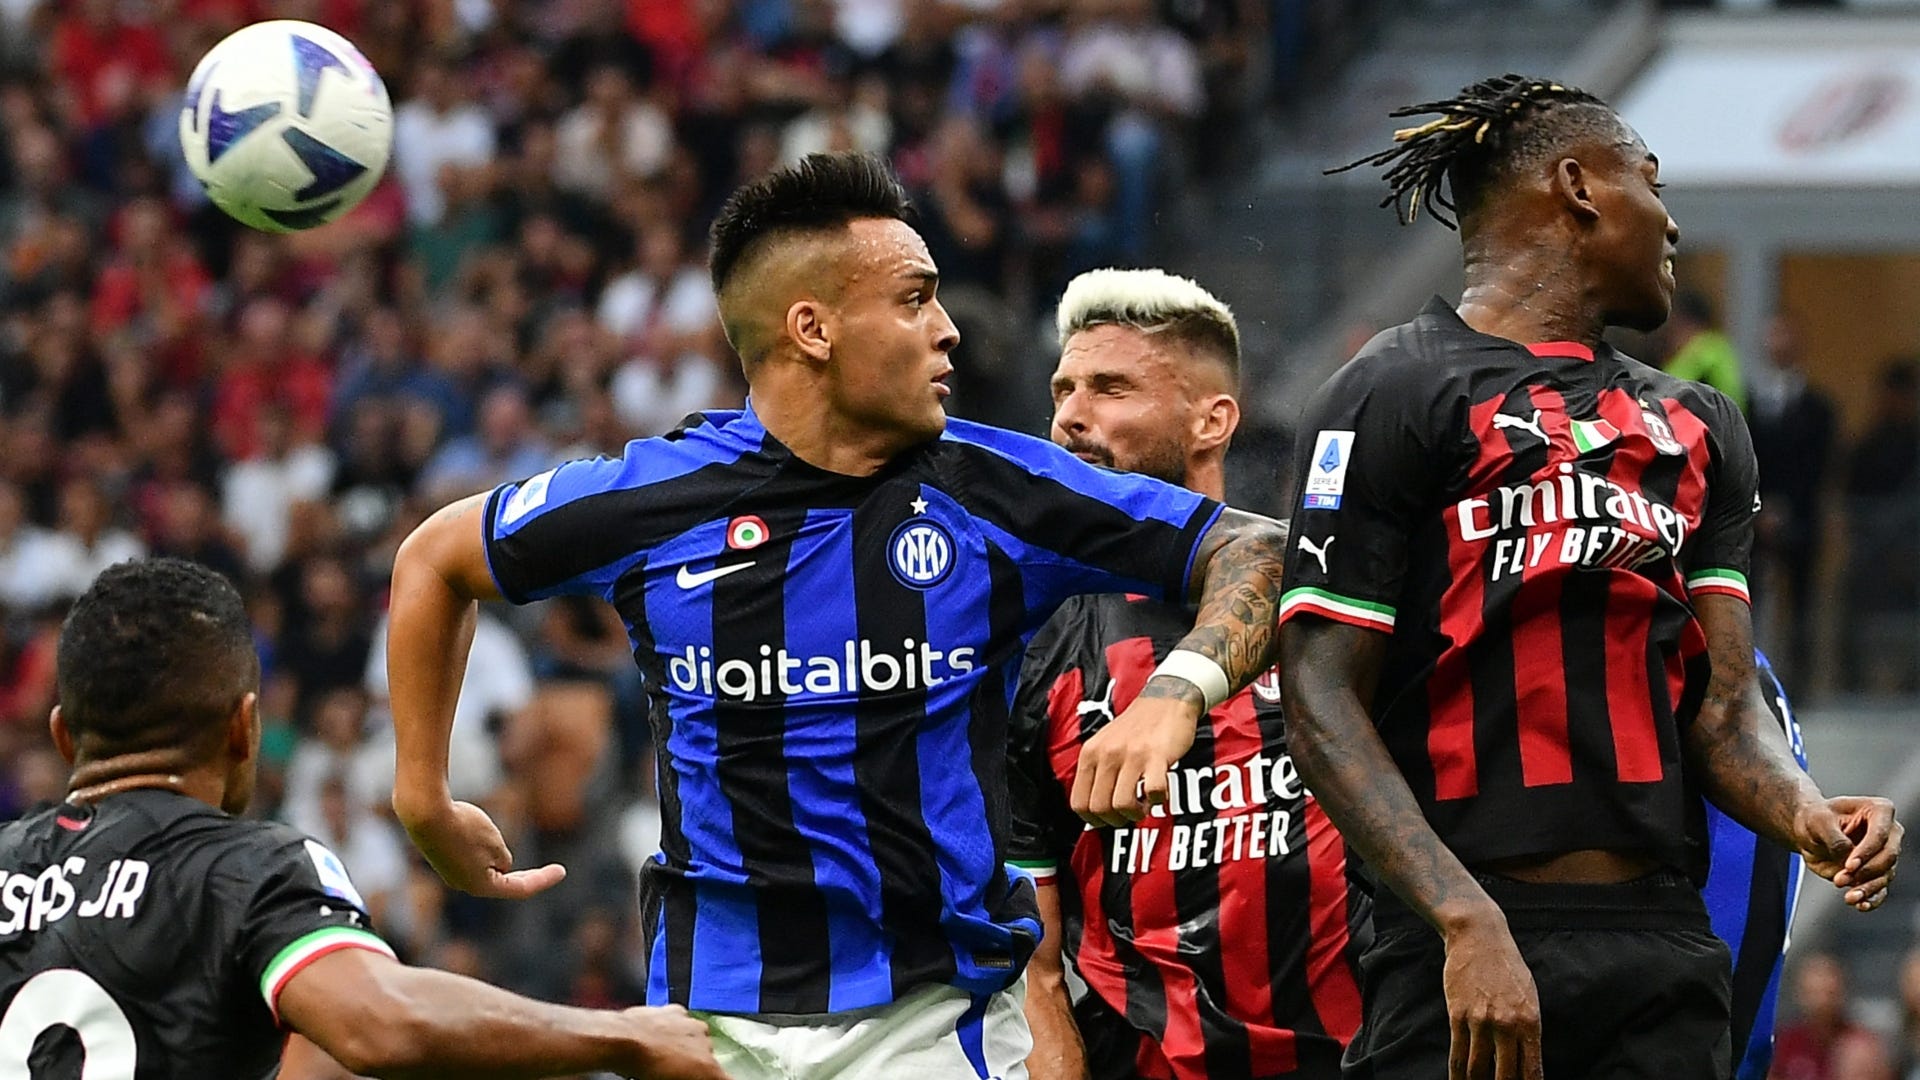 Lịch thi đấu bóng đá Champions League hôm nay: Milan vs Inter - Rực lửa 'siêu kinh điển' nước Ý?